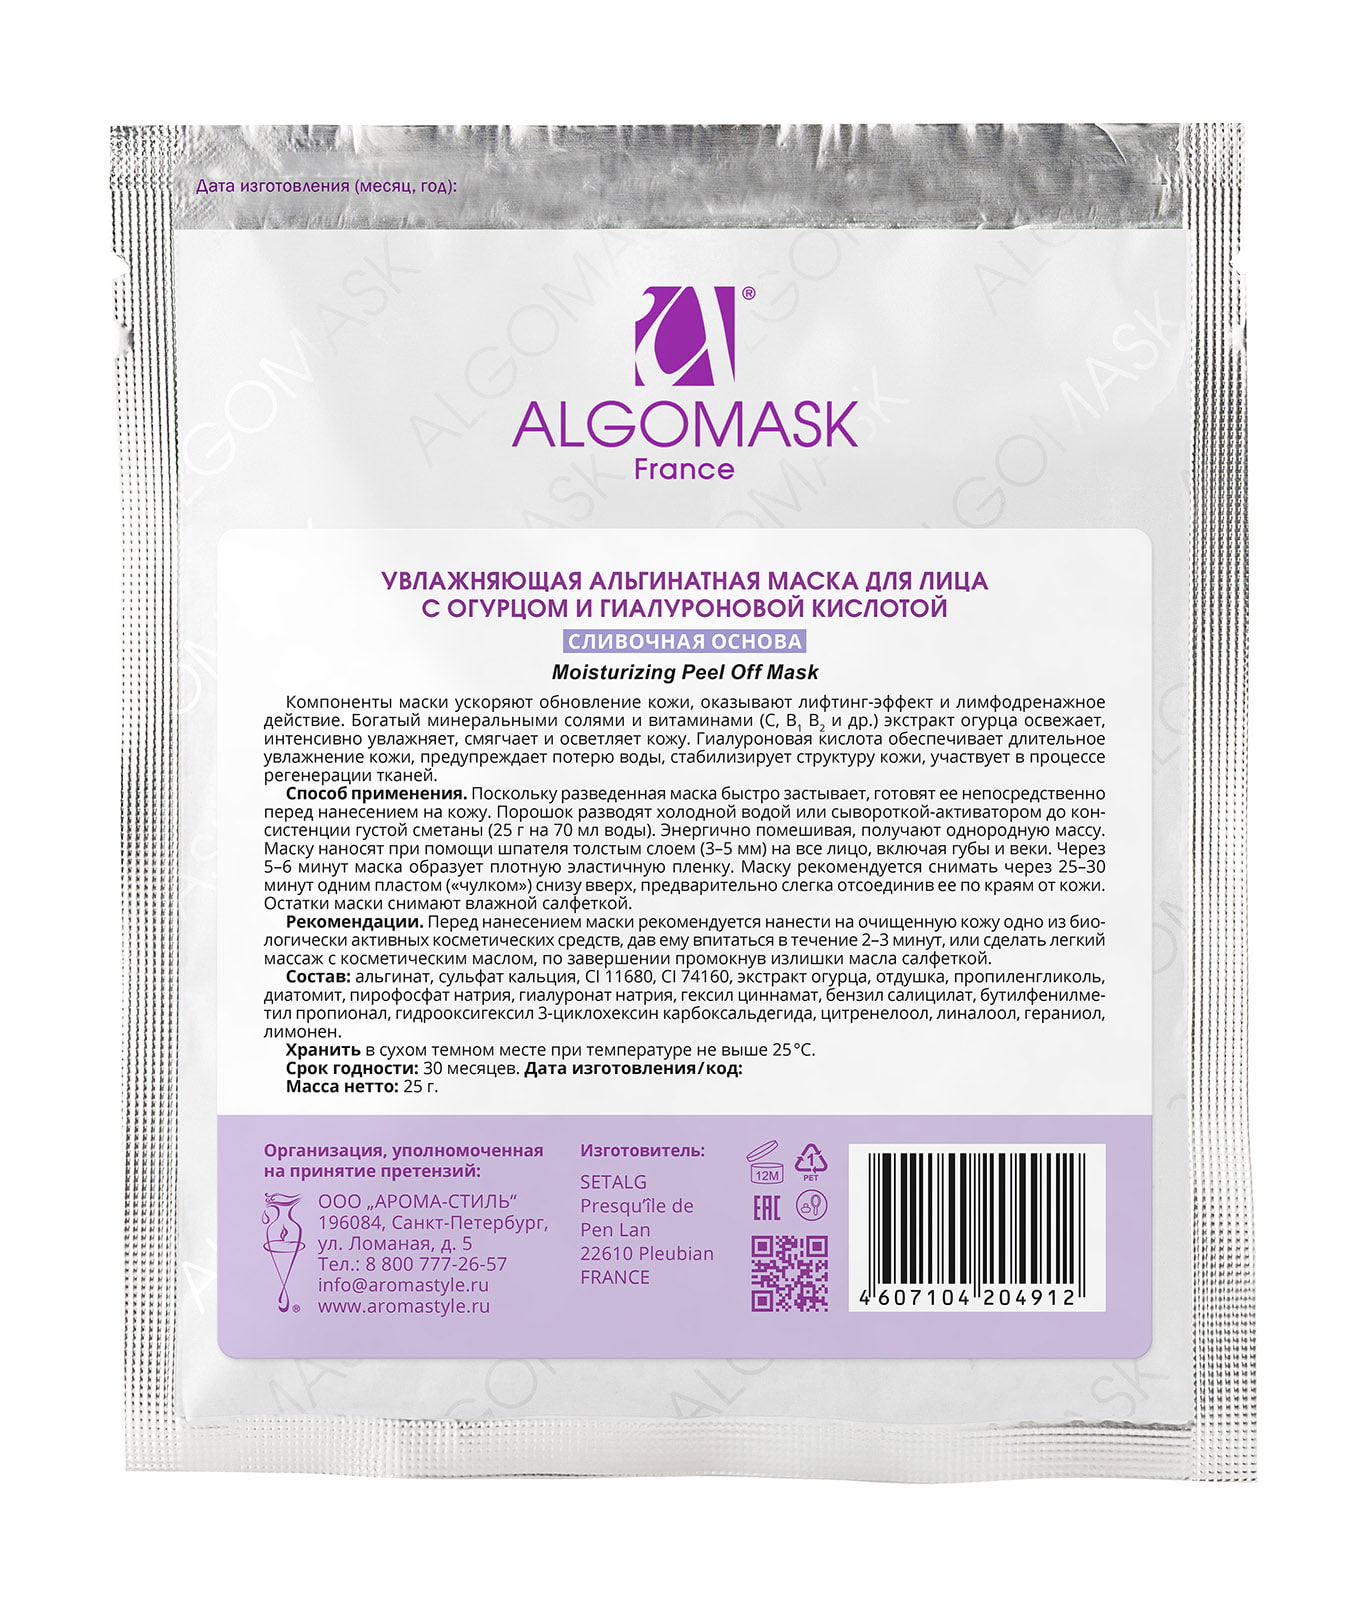 Увлажняющая альгинатная маска для лица с огурцом и гиалуроновой кислотой - 25 г